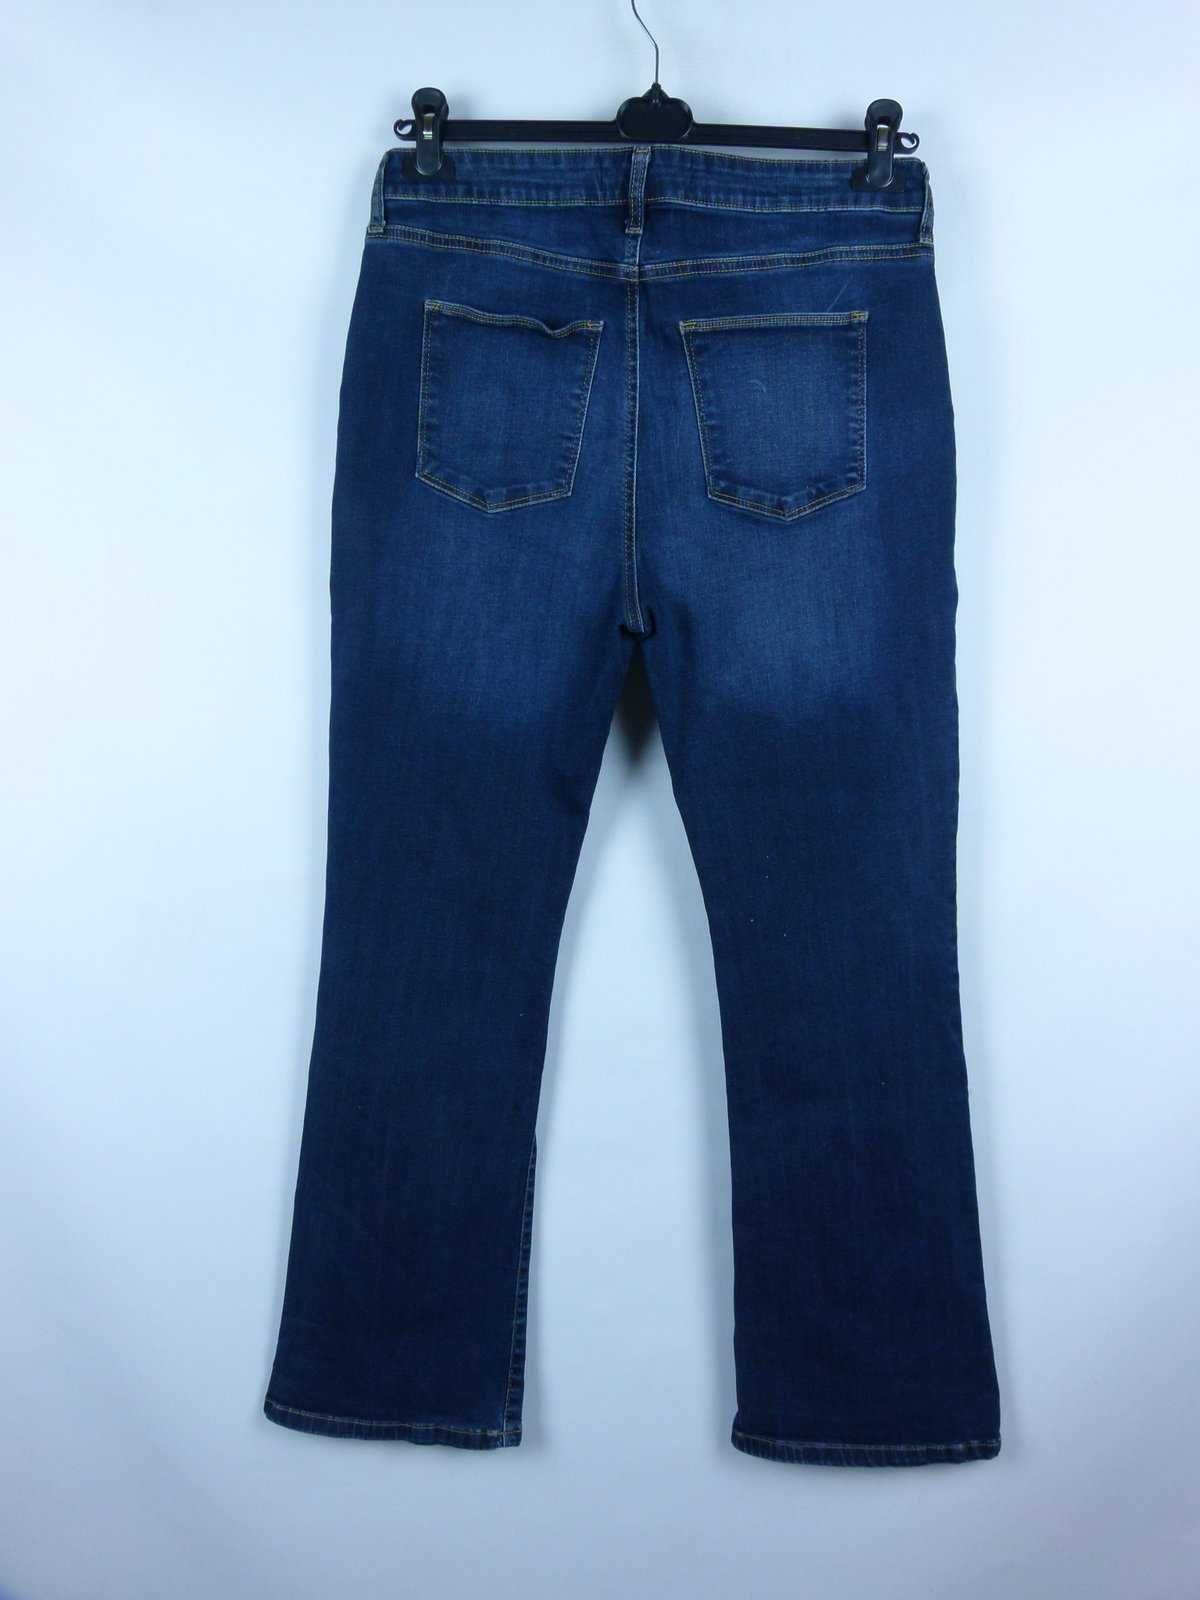 V by Very spodnie jeans bootcut - 16 regular / 44